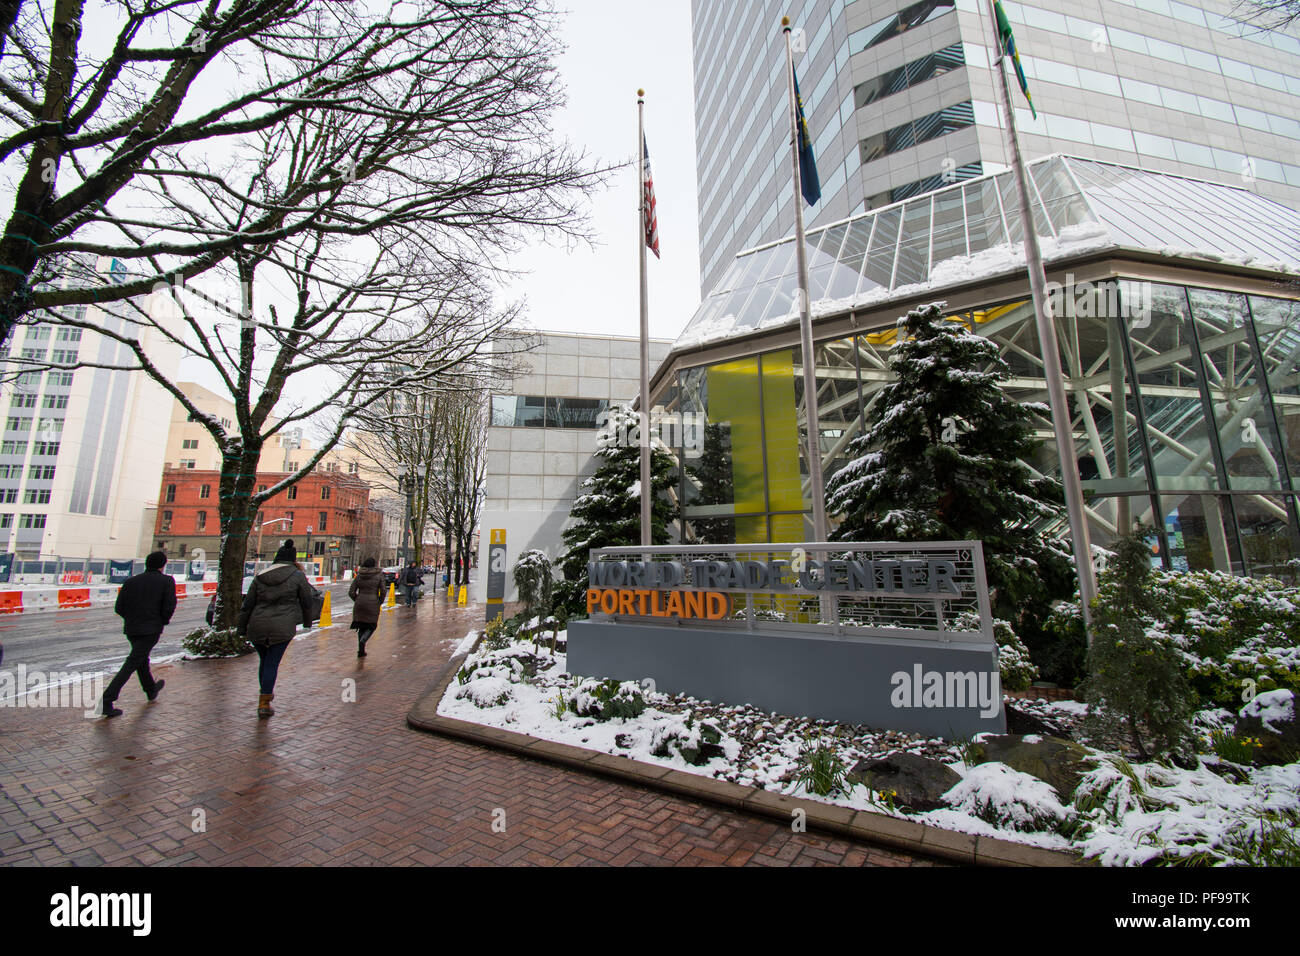 PORTLAND, Oregon, el 21 de febrero de 2018: gente que camina más allá de un edificio del World Trade Center en Portland, en una mañana de invierno con nieve en el suelo. Foto de stock